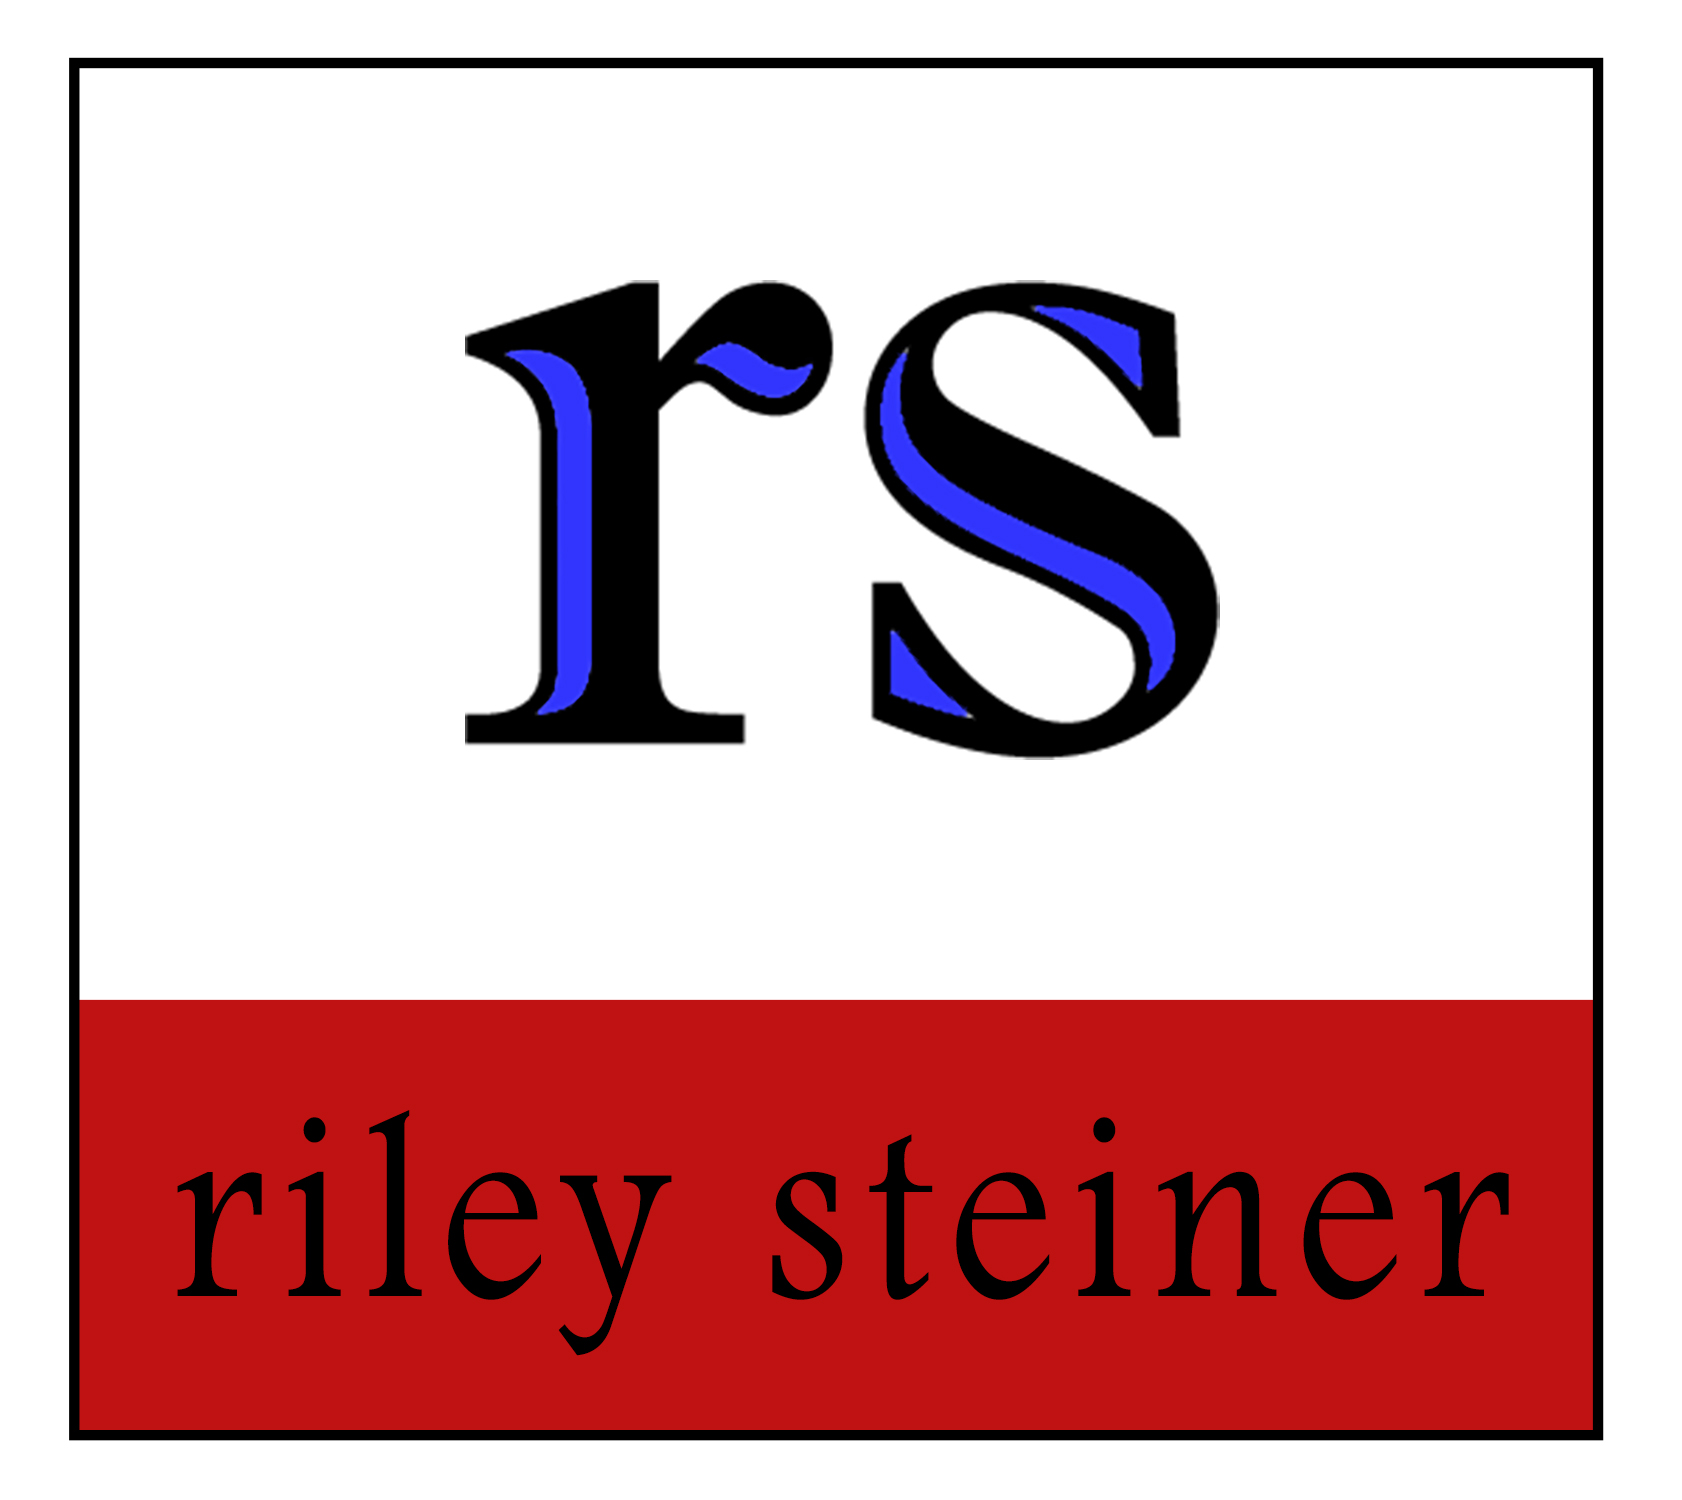 Riley Steiner